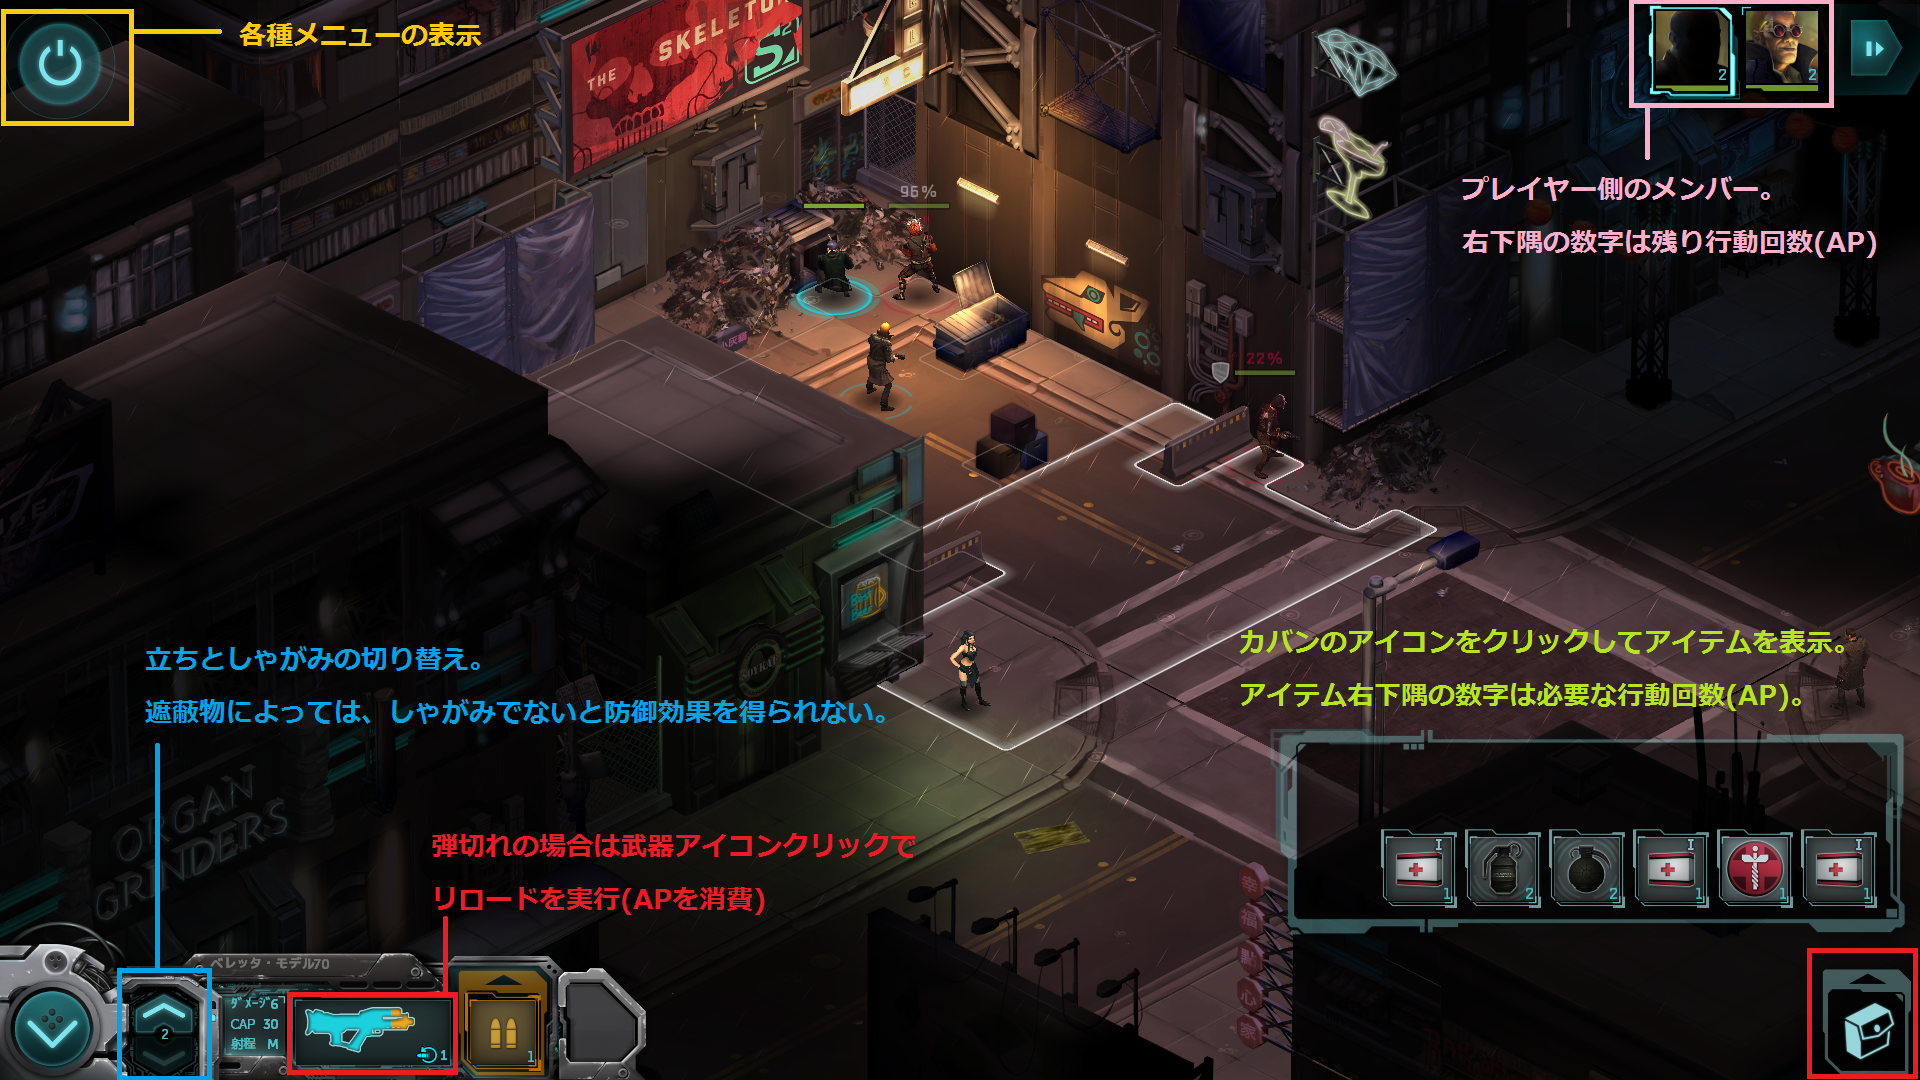 無料 サイバーパンクrpg Shadowrun Returns Deluxeがhumbleにて期間限定無料配布 日本語化と操作ガイド追記